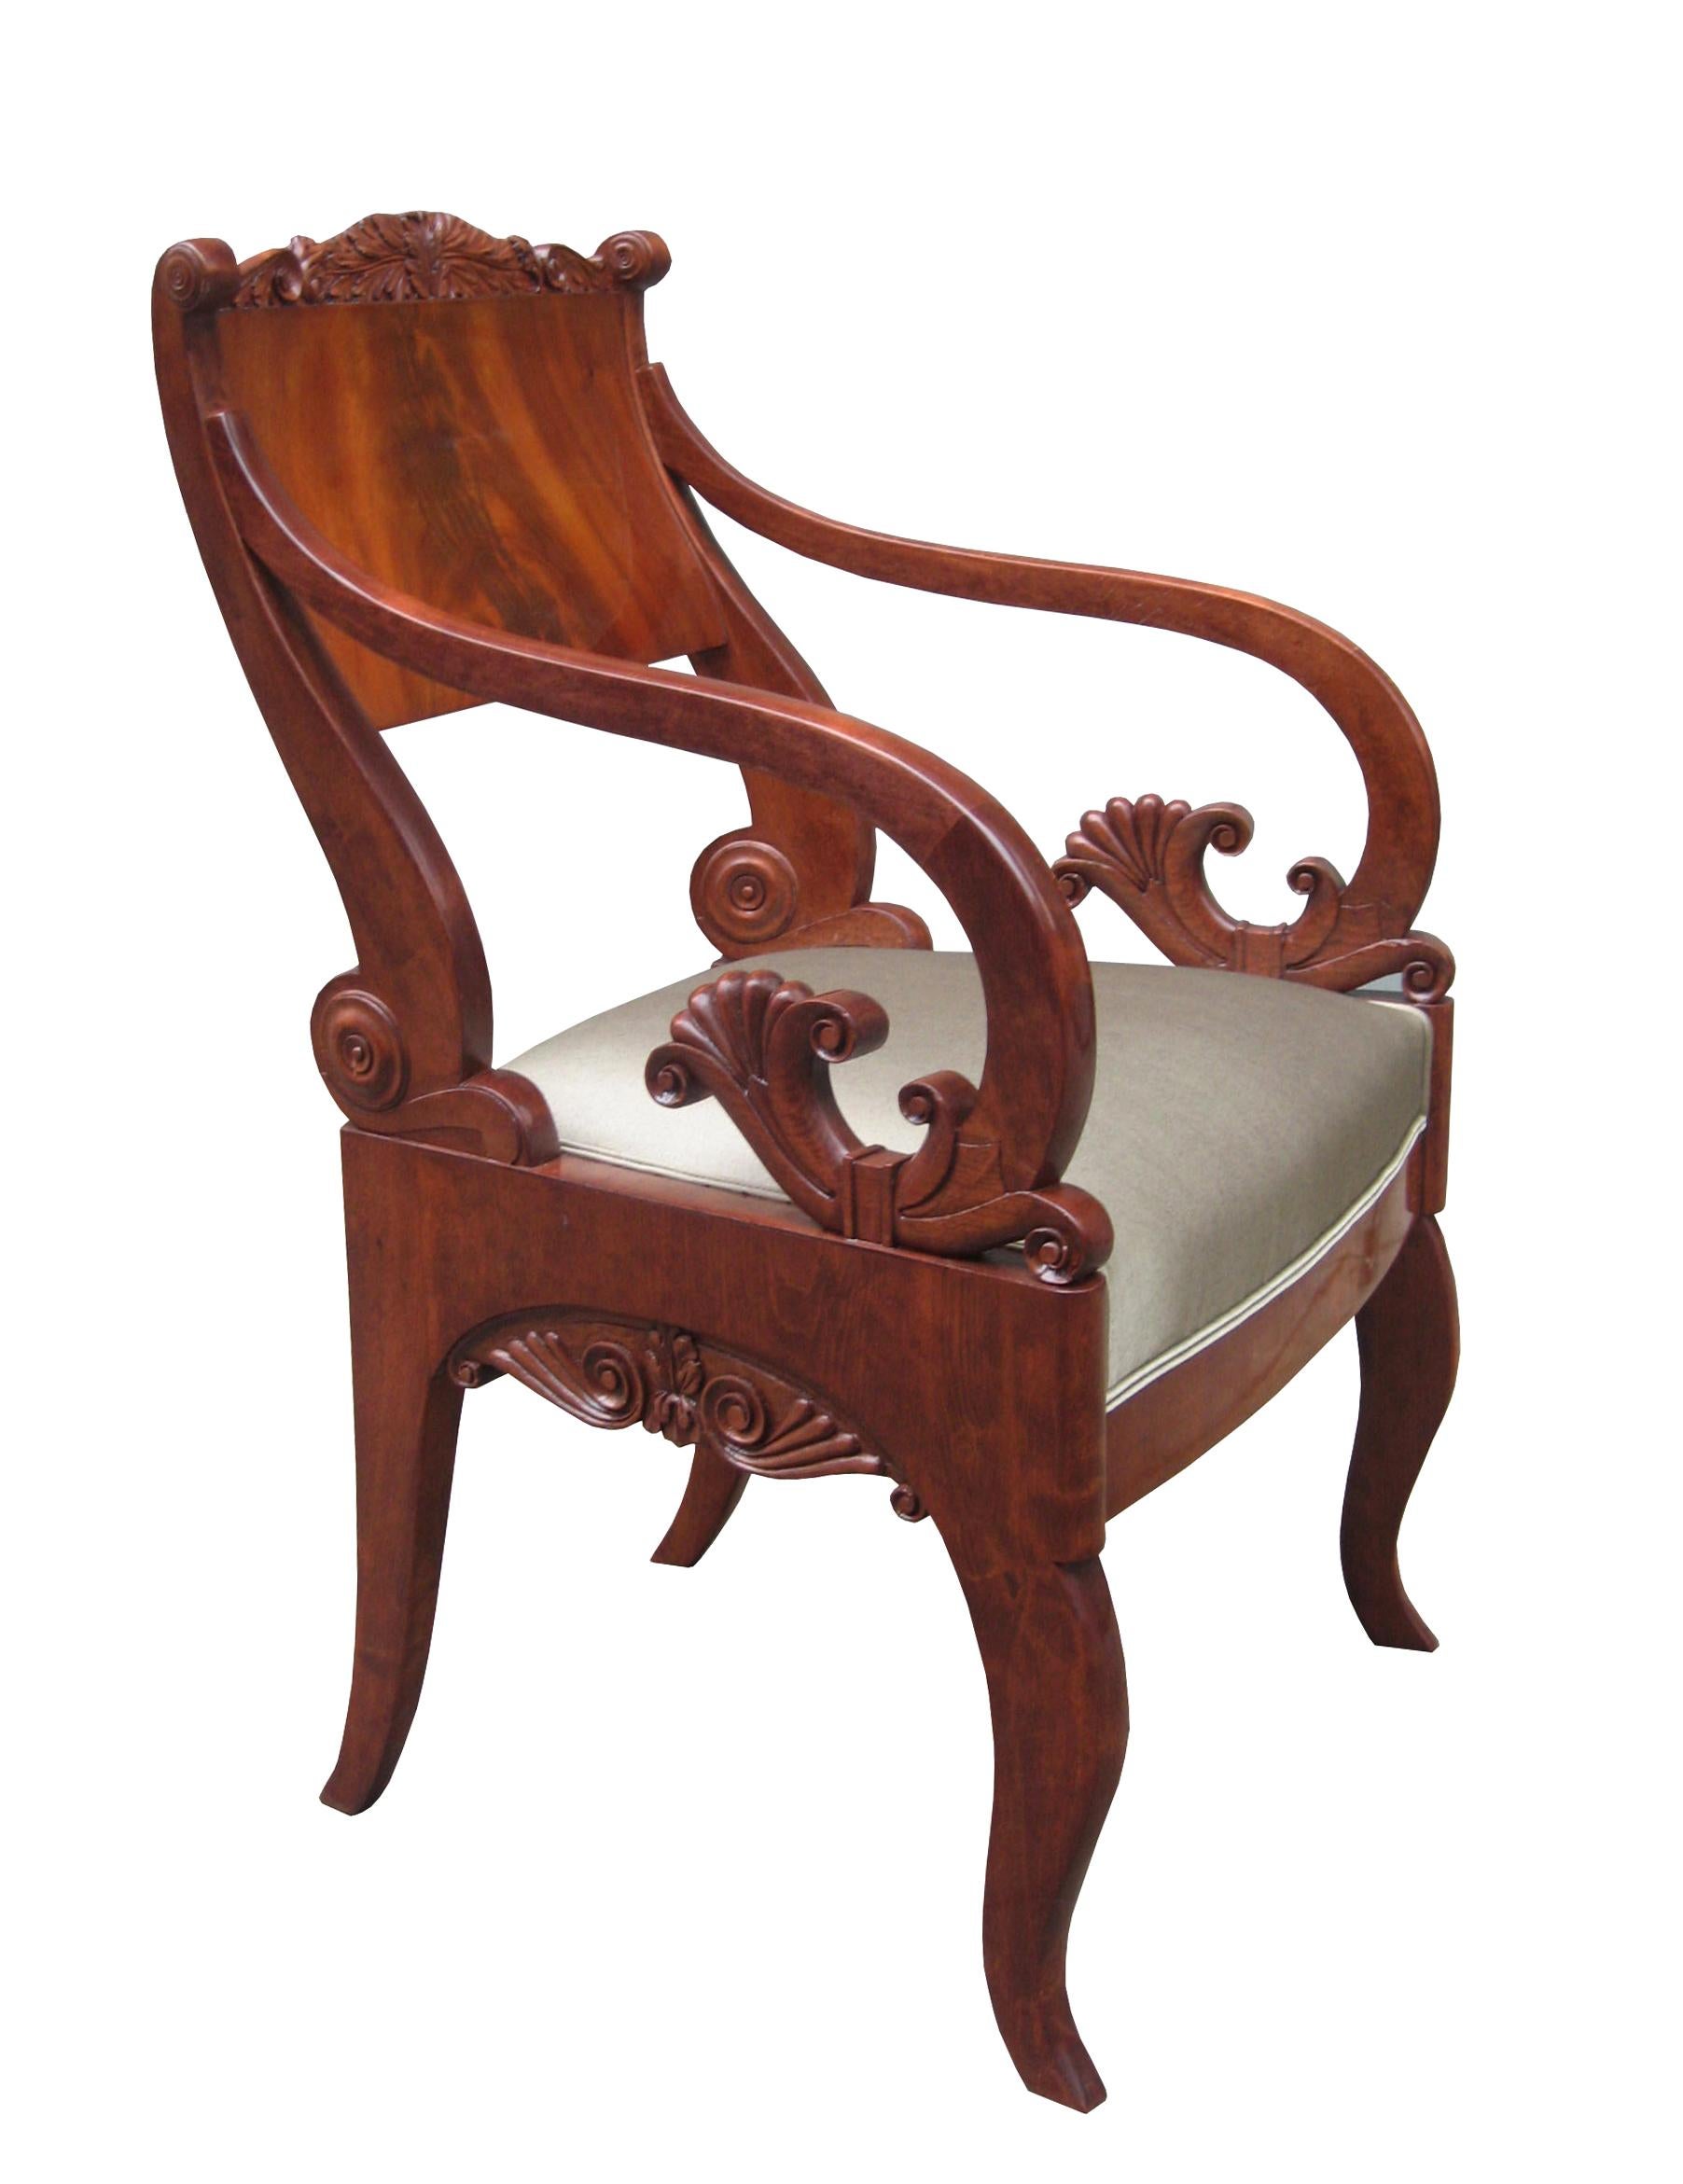 Une belle paire de fauteuils Empire.
Acajou massif avec détails finement sculptés.